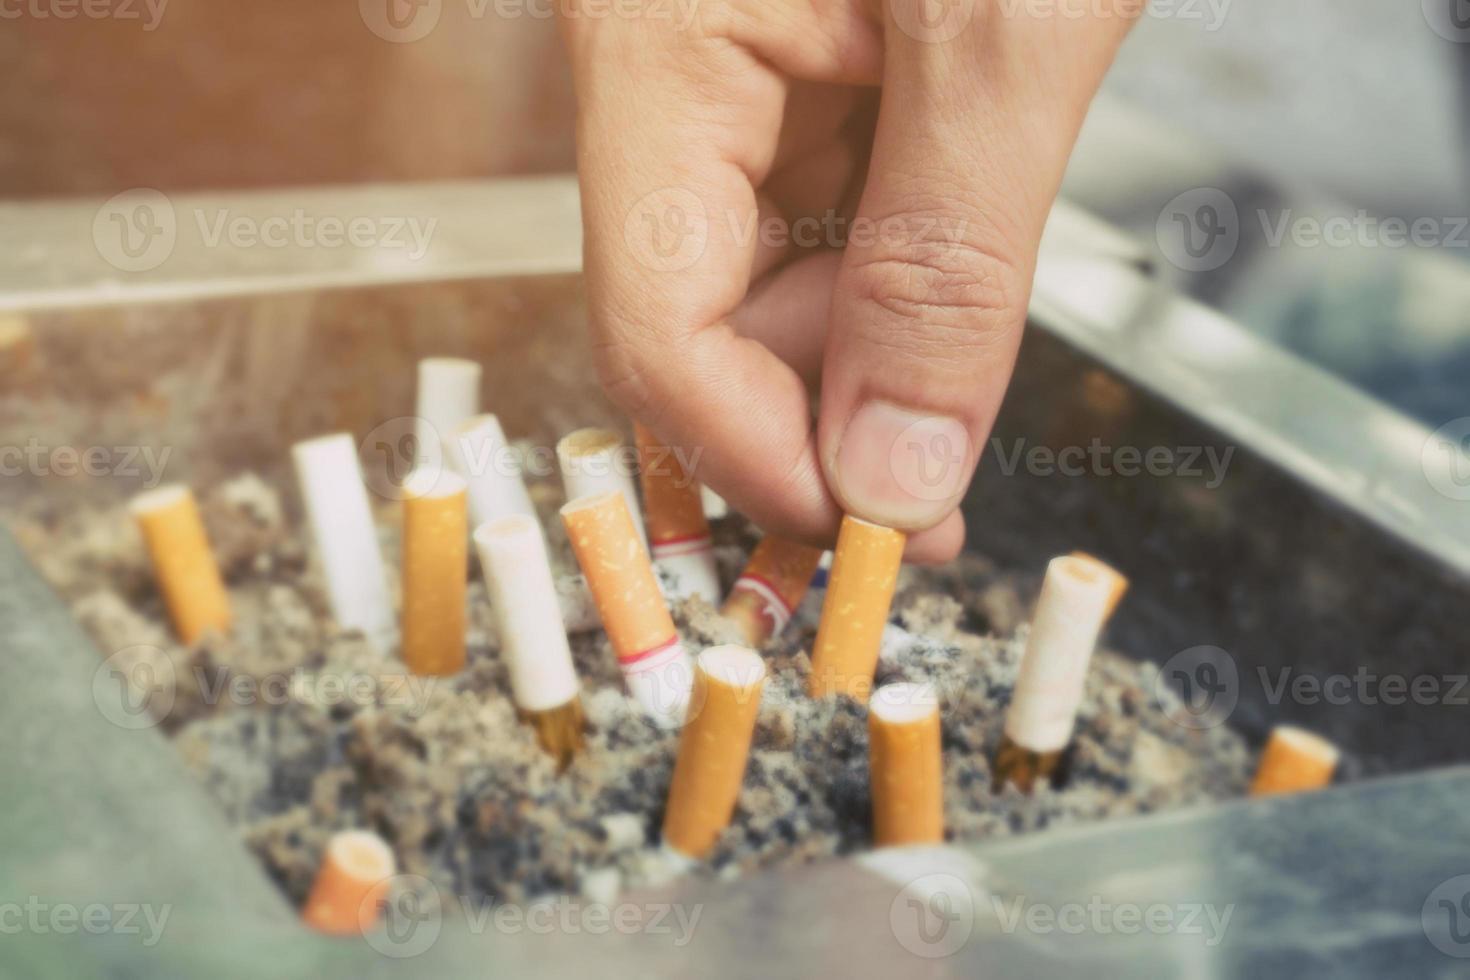 colilla de cigarrillos en el cenicero. hay muchos tipos de colillas de cigarrillos en la arena del cenicero. un cigarrillo no es bueno para la salud. foto